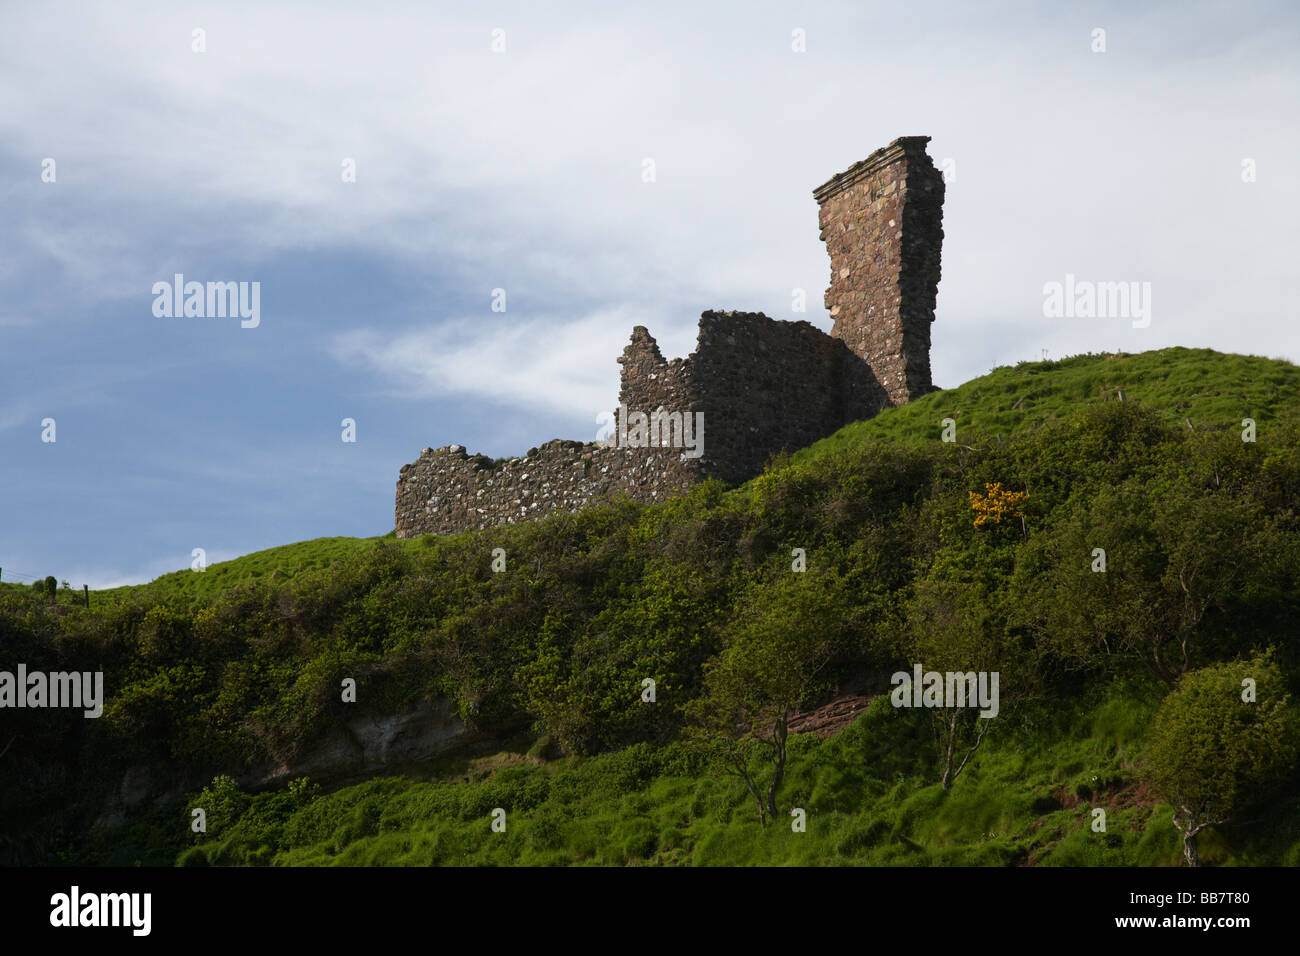 Il XIV secolo Baia Rossa del castello sul promontorio di una scogliera sopra la baia rossa nella contea di Antrim Irlanda del Nord Regno Unito Foto Stock